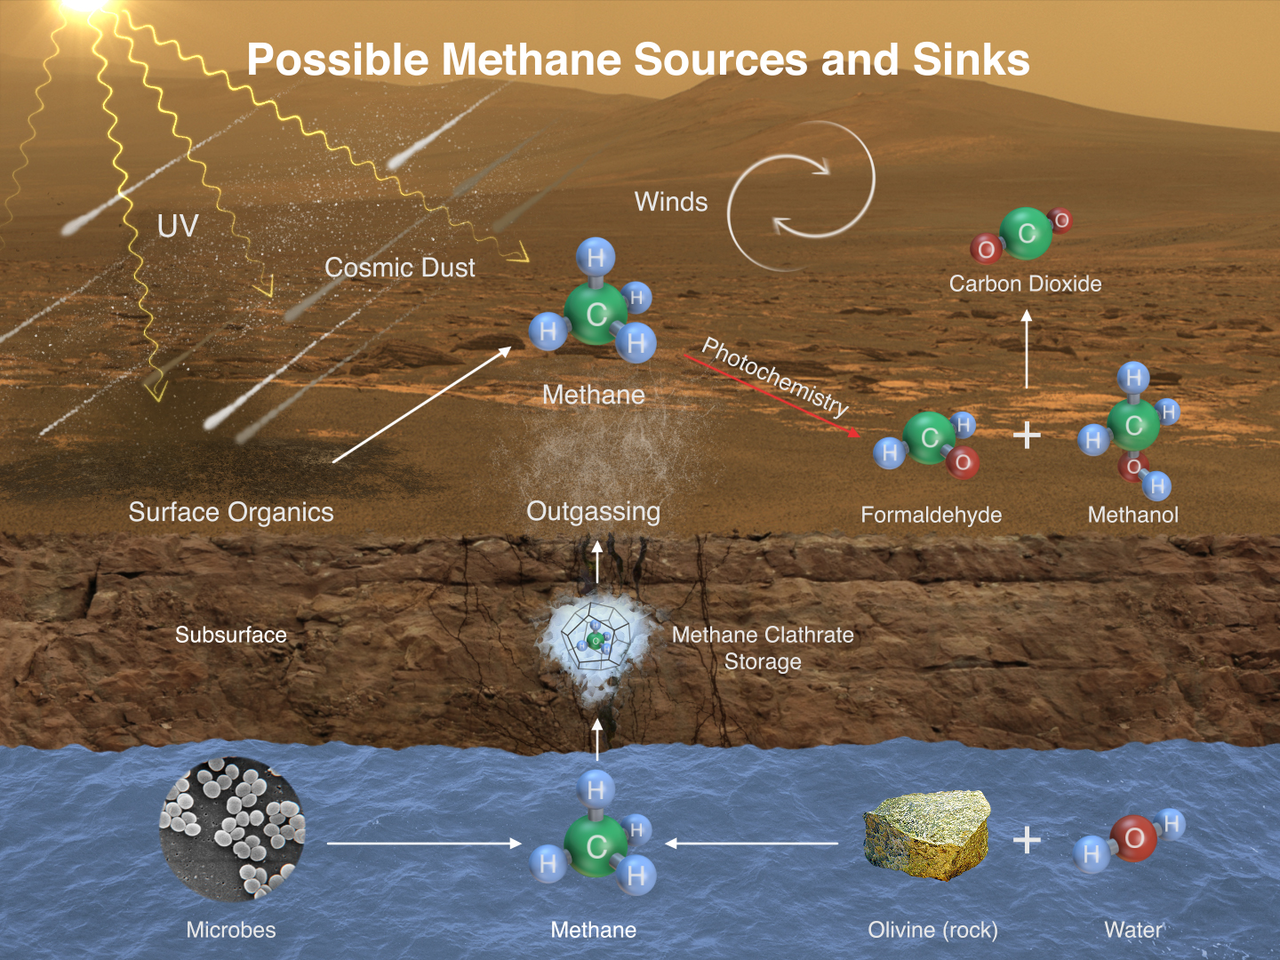 Az ábra a Curiosity által mért metán lehetséges keletkezéseinek módjait ismerteti. Ezek alapján a metán származhat Marsra hullott egyszerű szerves anyagok lebomlásából, felszín alatti kémiai reakciókból olivin ásványok és víz szén-dioxid jelenlétében létrejövő reakciójából, valamint potenciálisan biológiai aktivitás melléktermékeként.